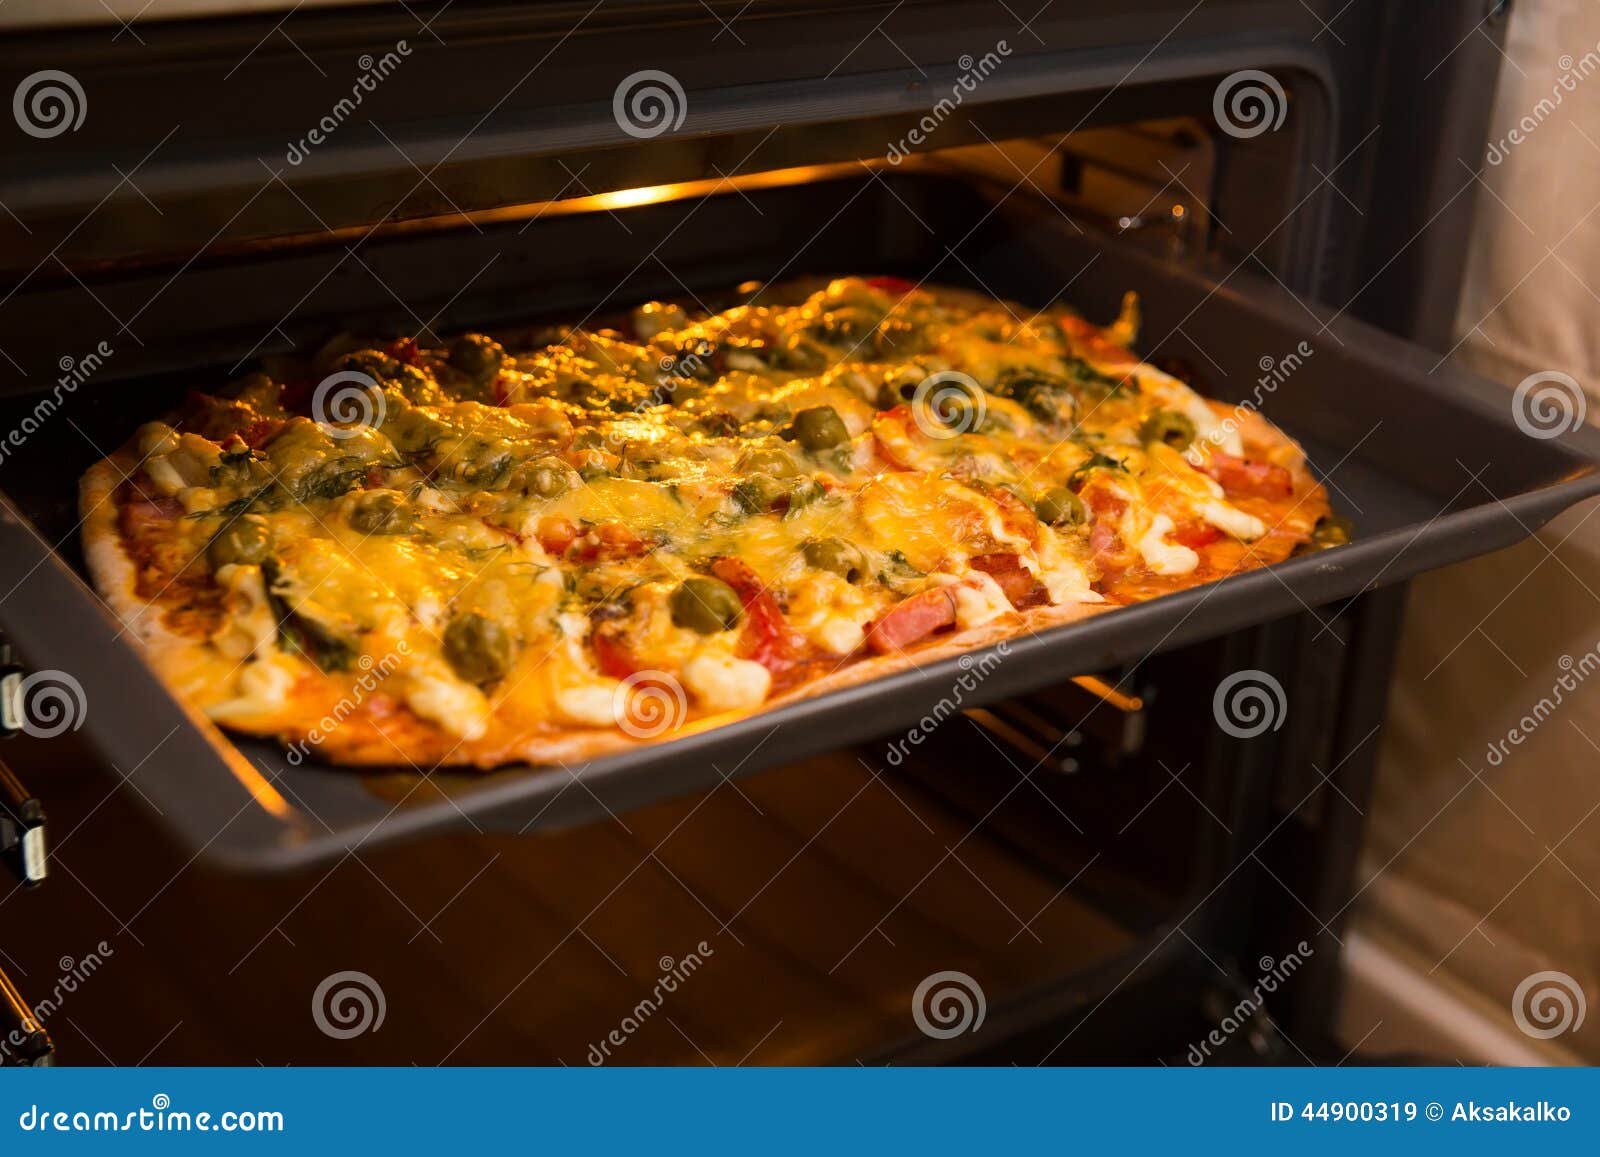 что нужно чтобы приготовить пиццу в домашних условиях в духовке фото 29